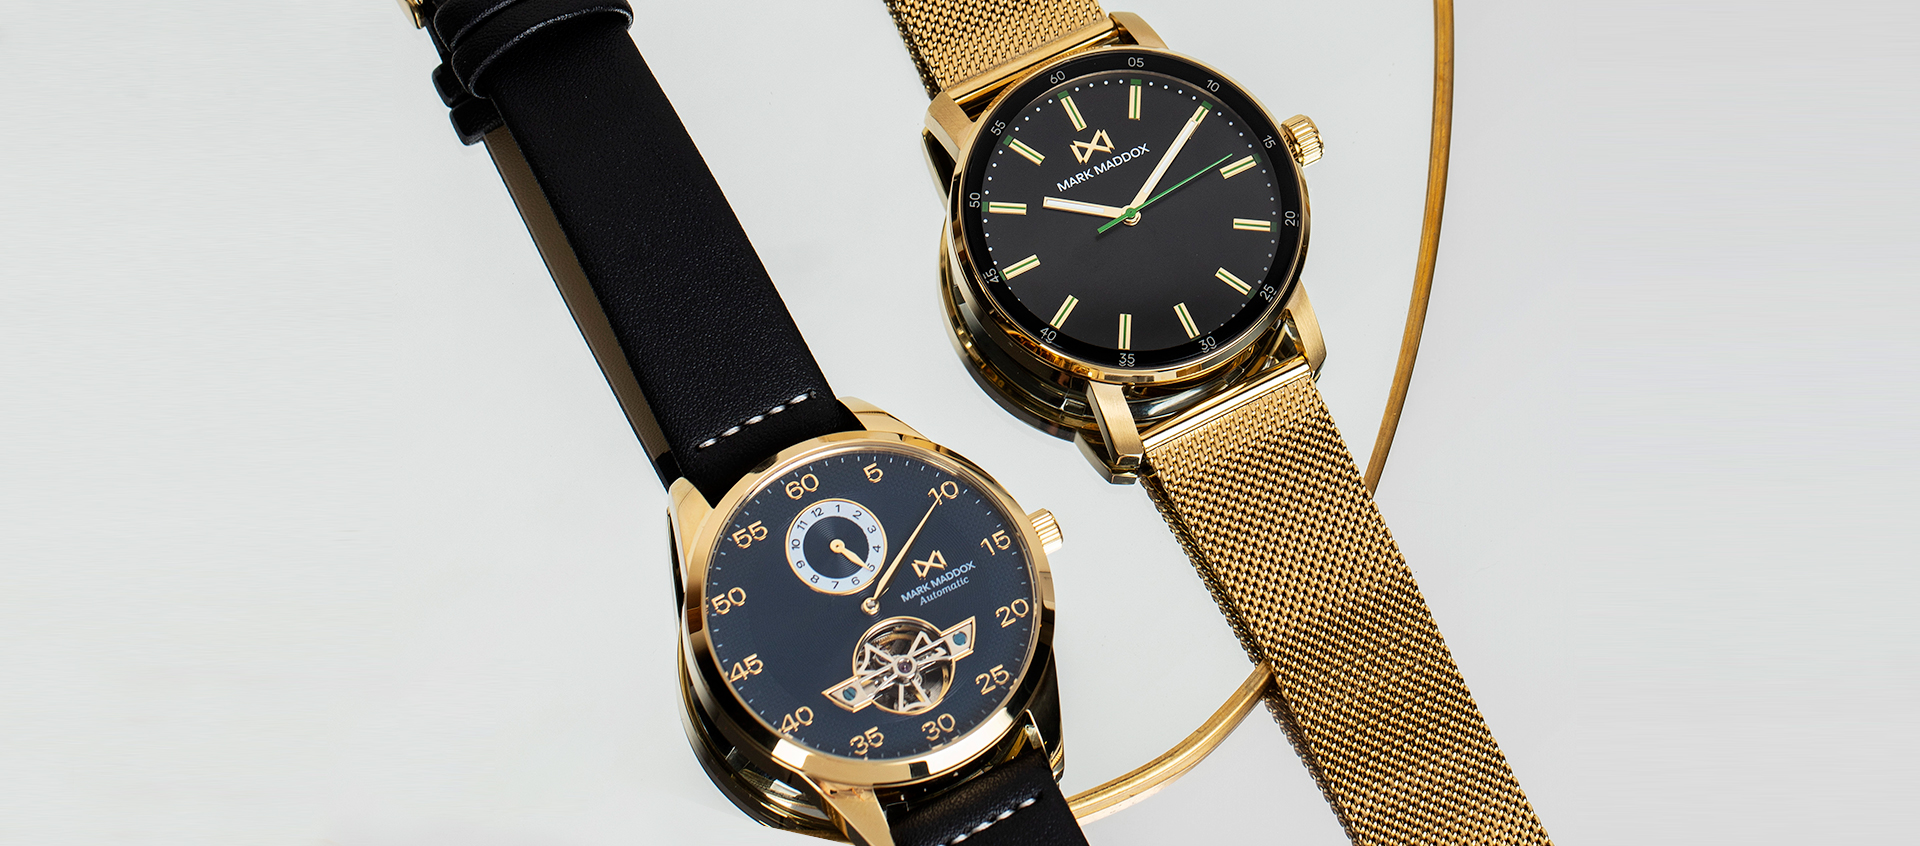 ¡Tú look trendy necesita un reloj para ser perfecto!